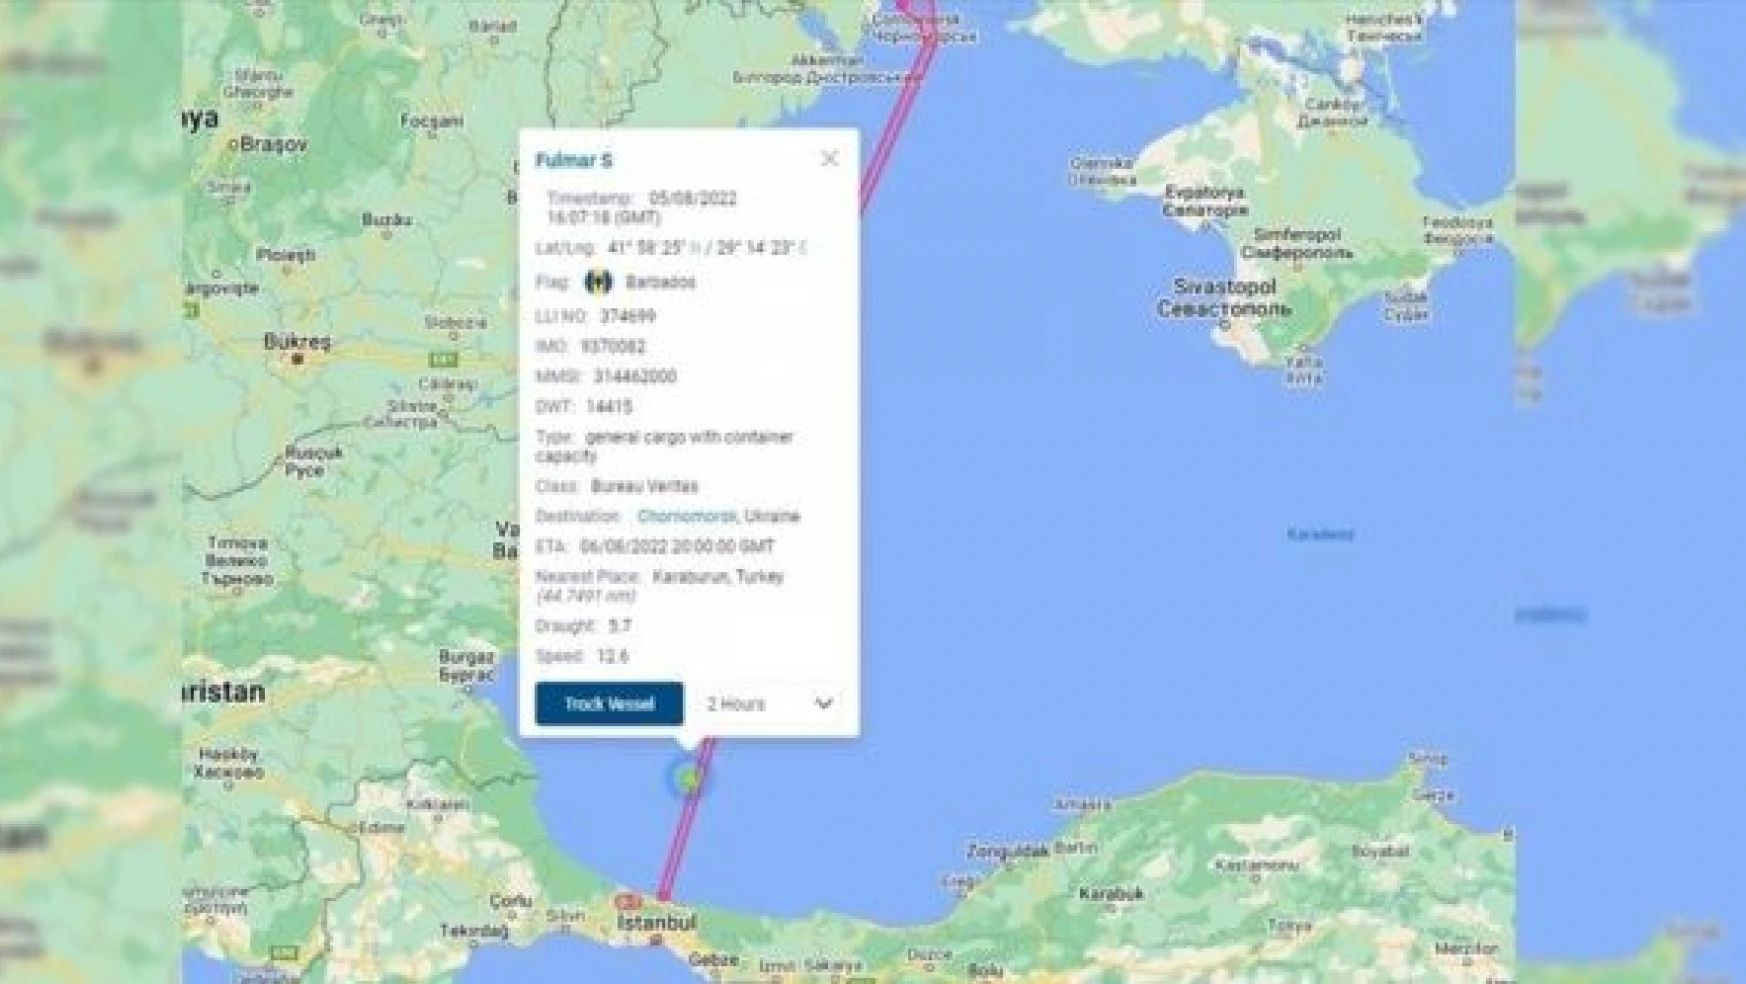 FULMAR S gemisinin, Ukrayna'ya doğru seyri başladı